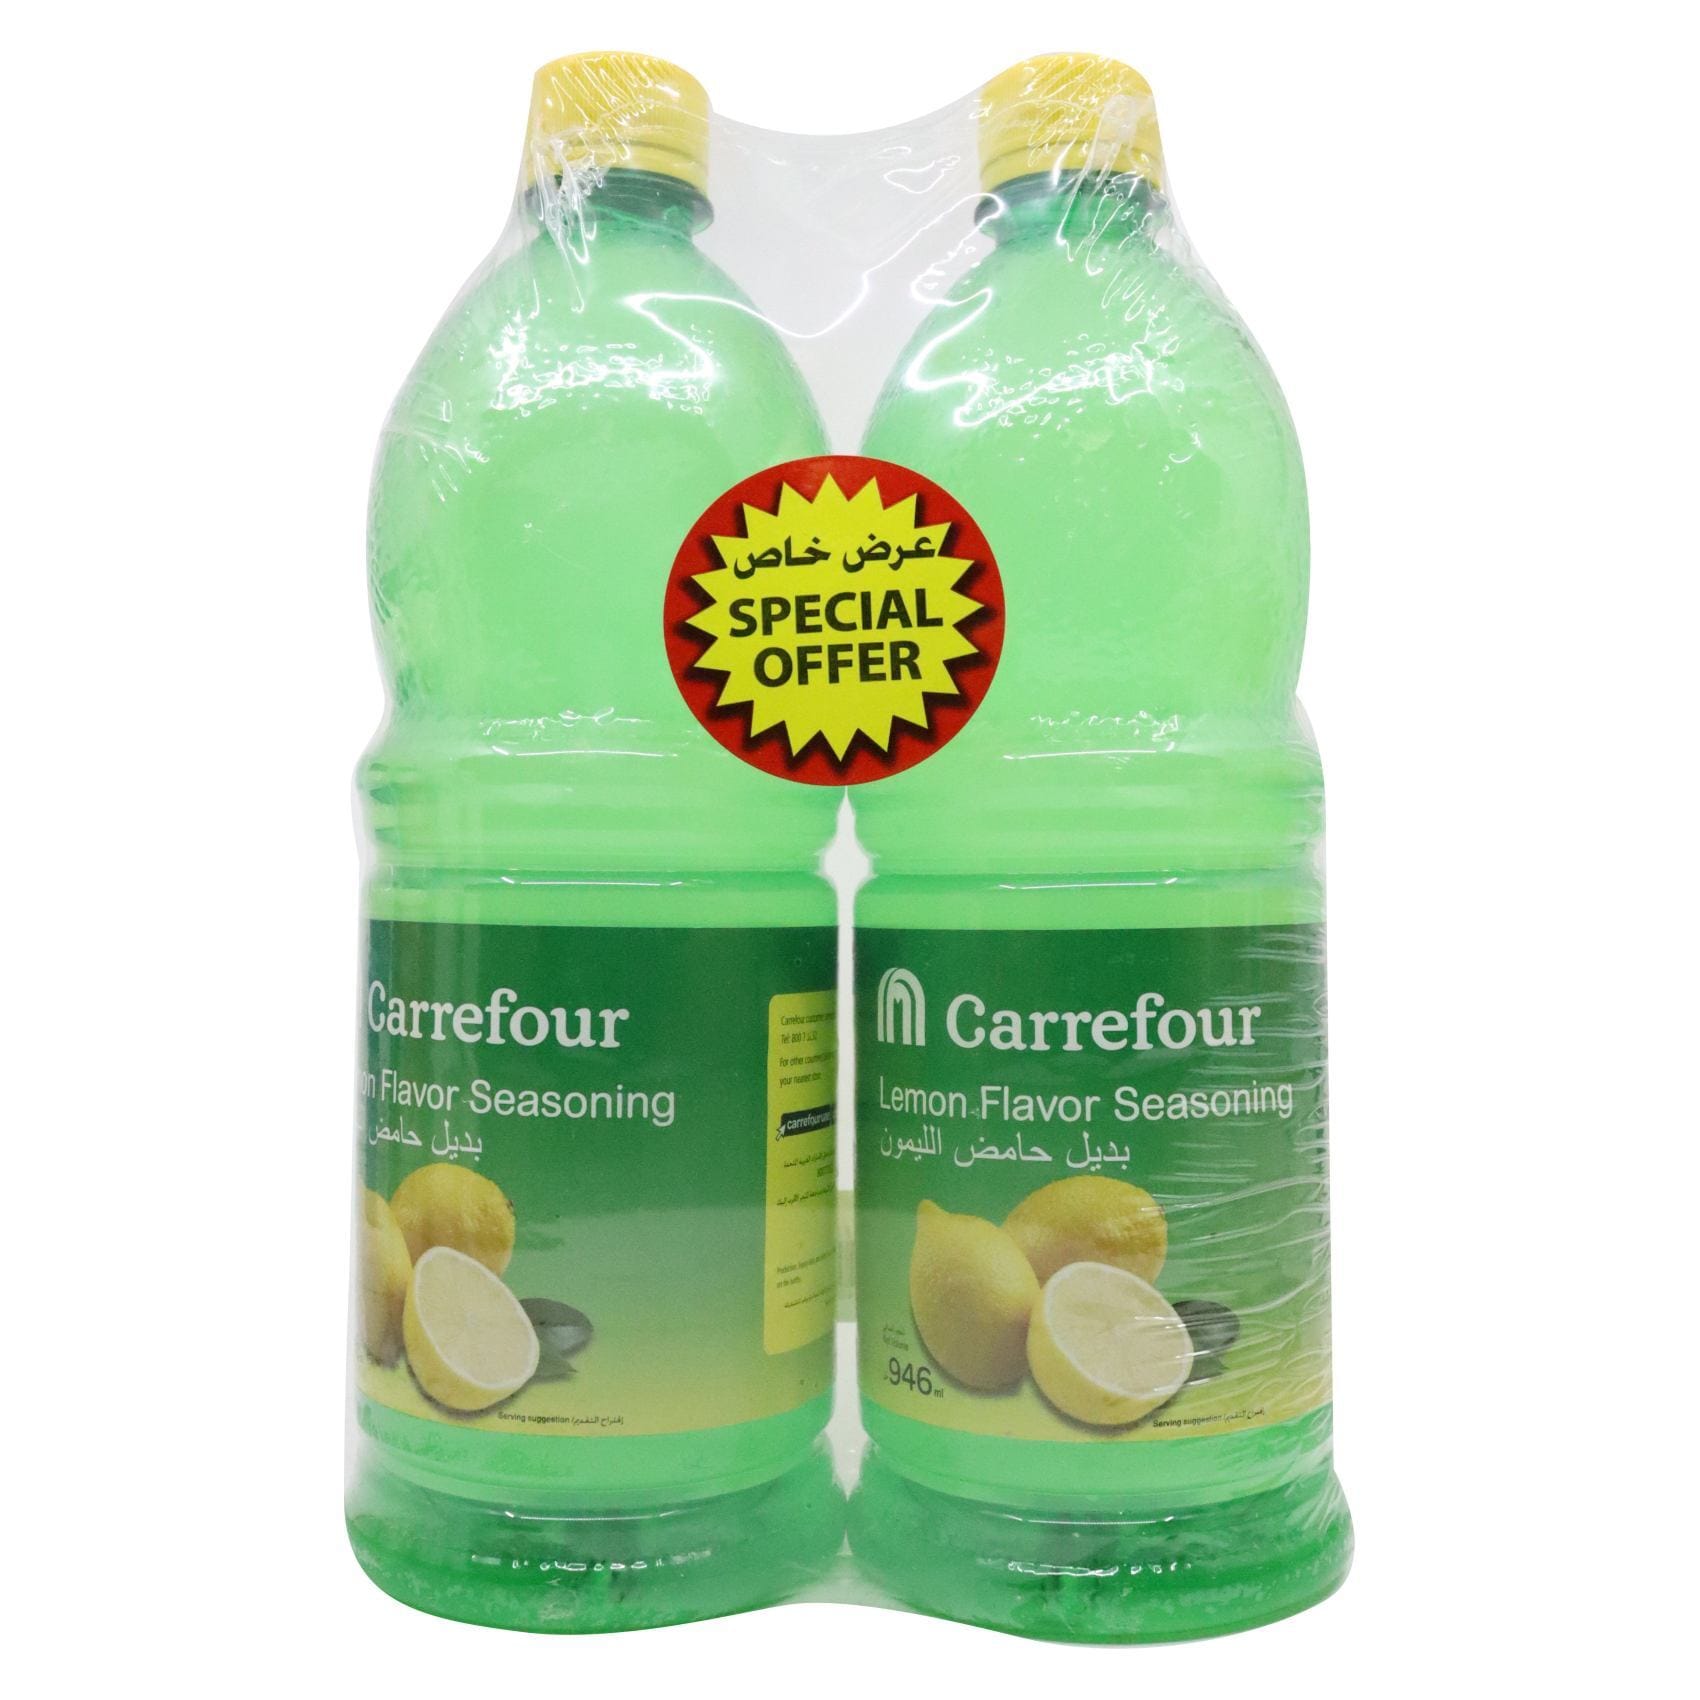 Buy Carrefour Lemon Flavour Seasoning 946ml Pack of 2 Online - Shop Food  Cupboard on Carrefour UAE